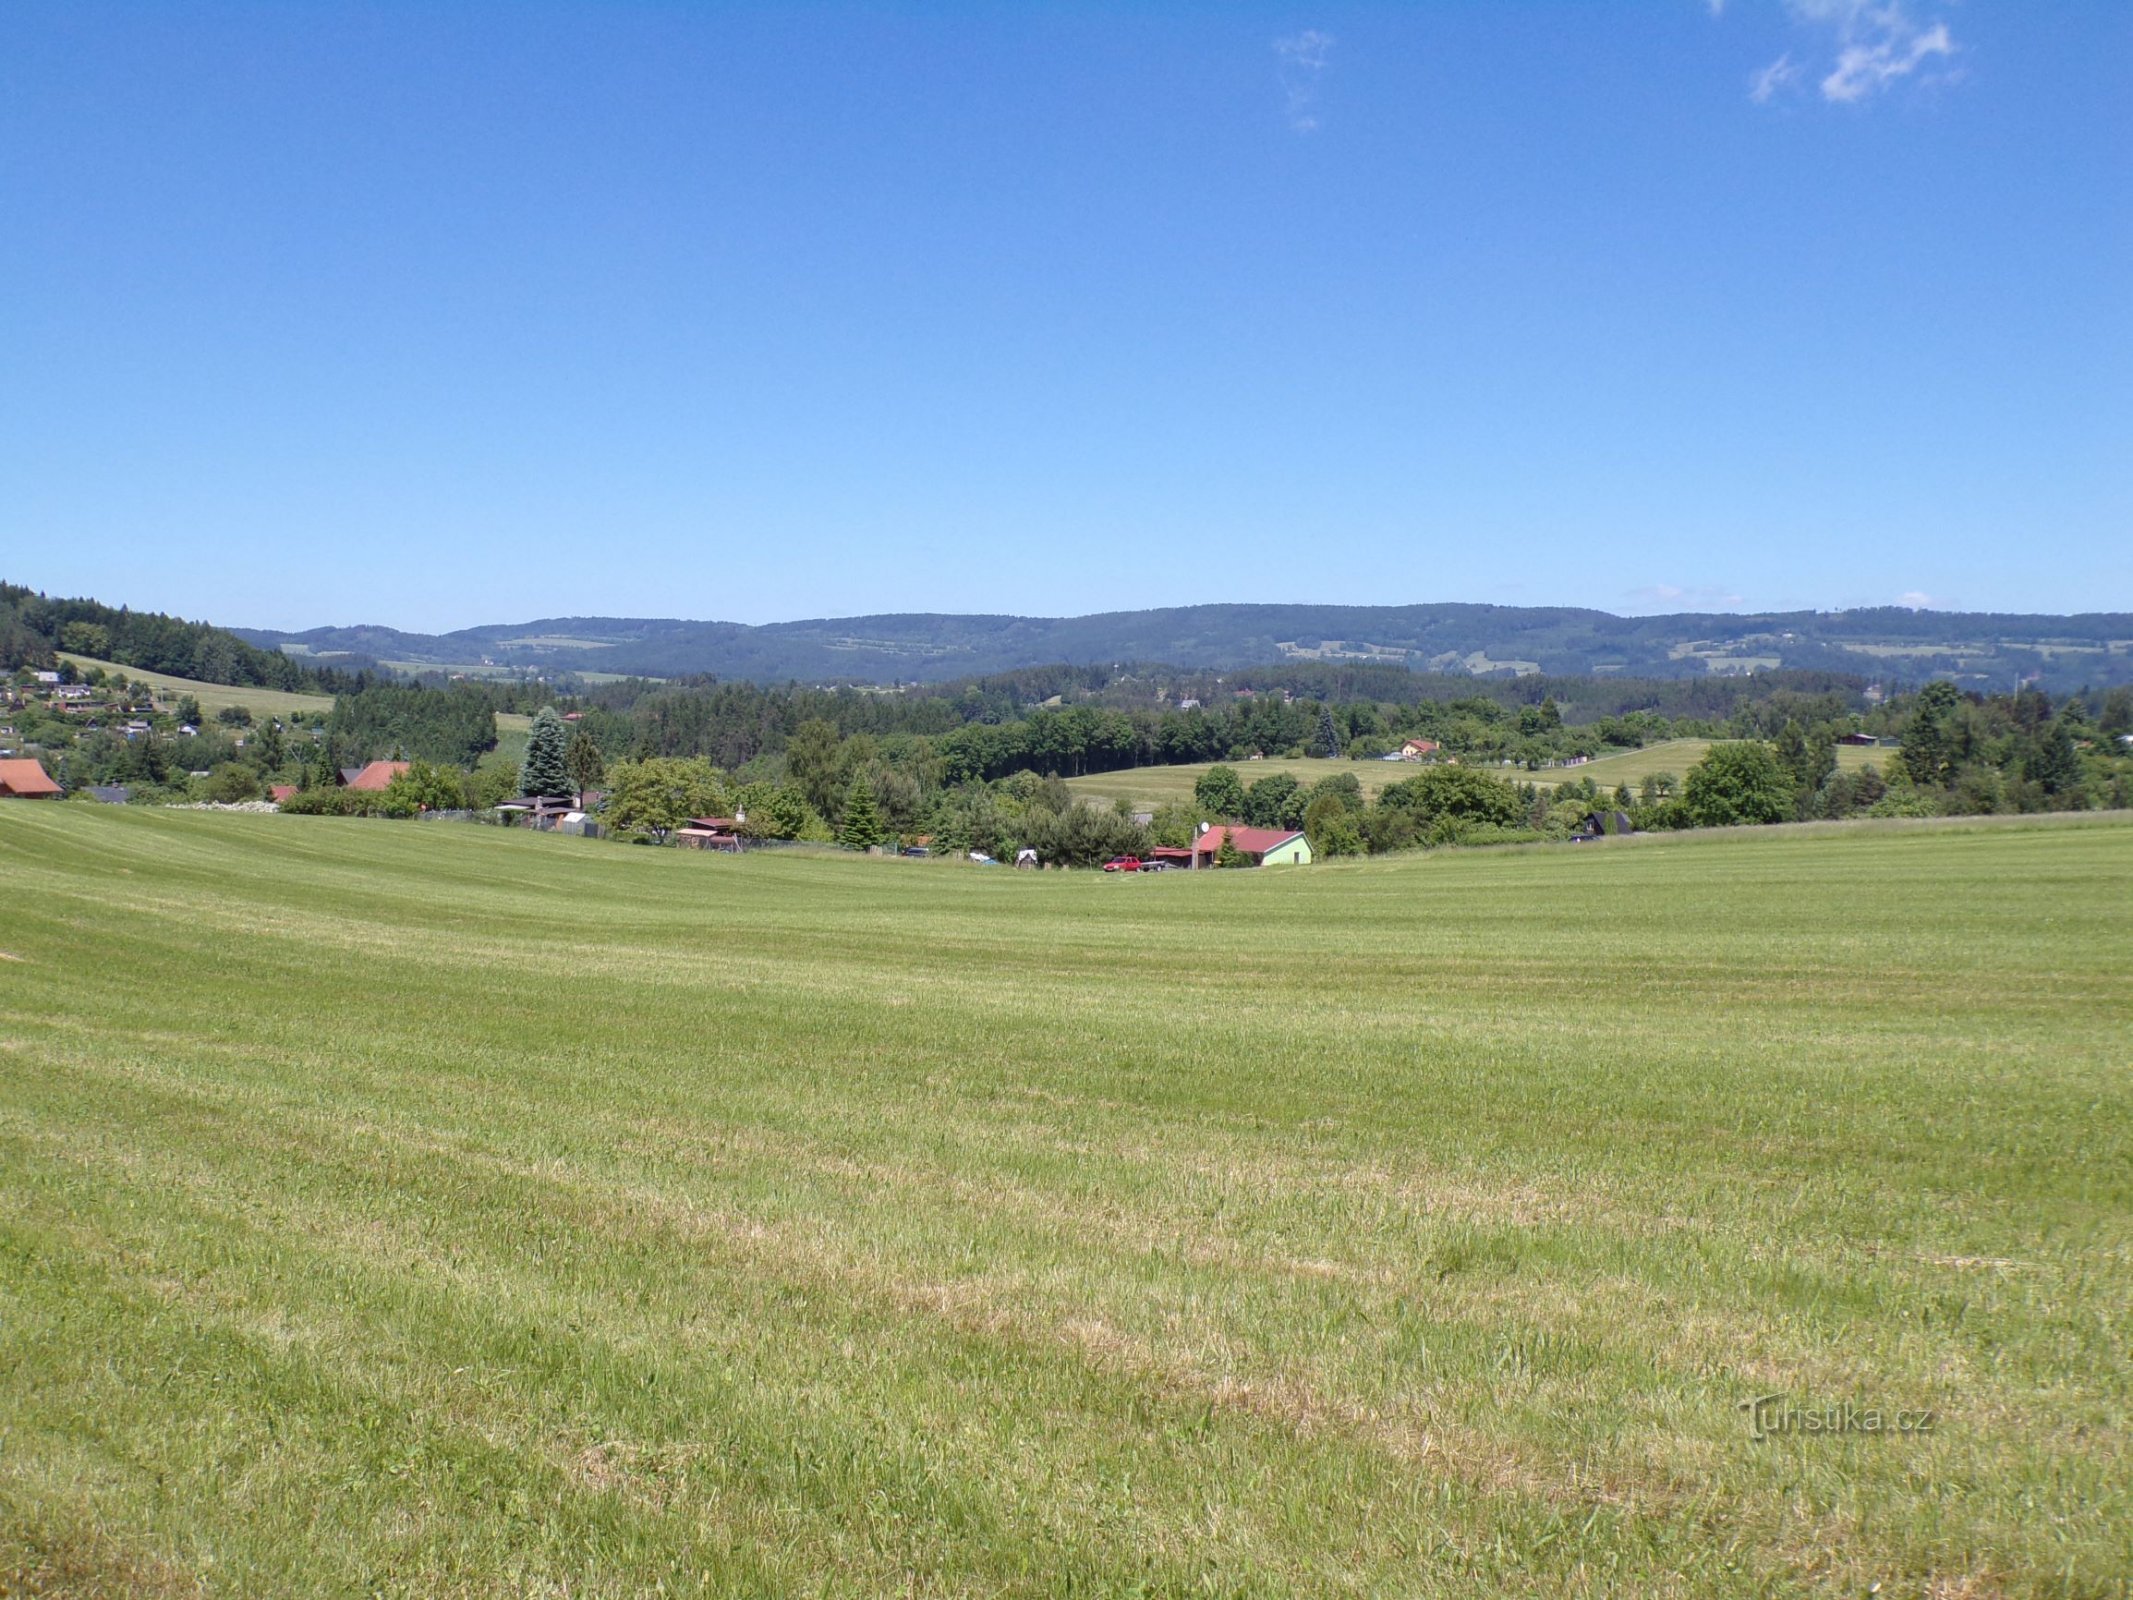 View from the location Na Samkovský k Lipká (Úpice, 14.6.2021)